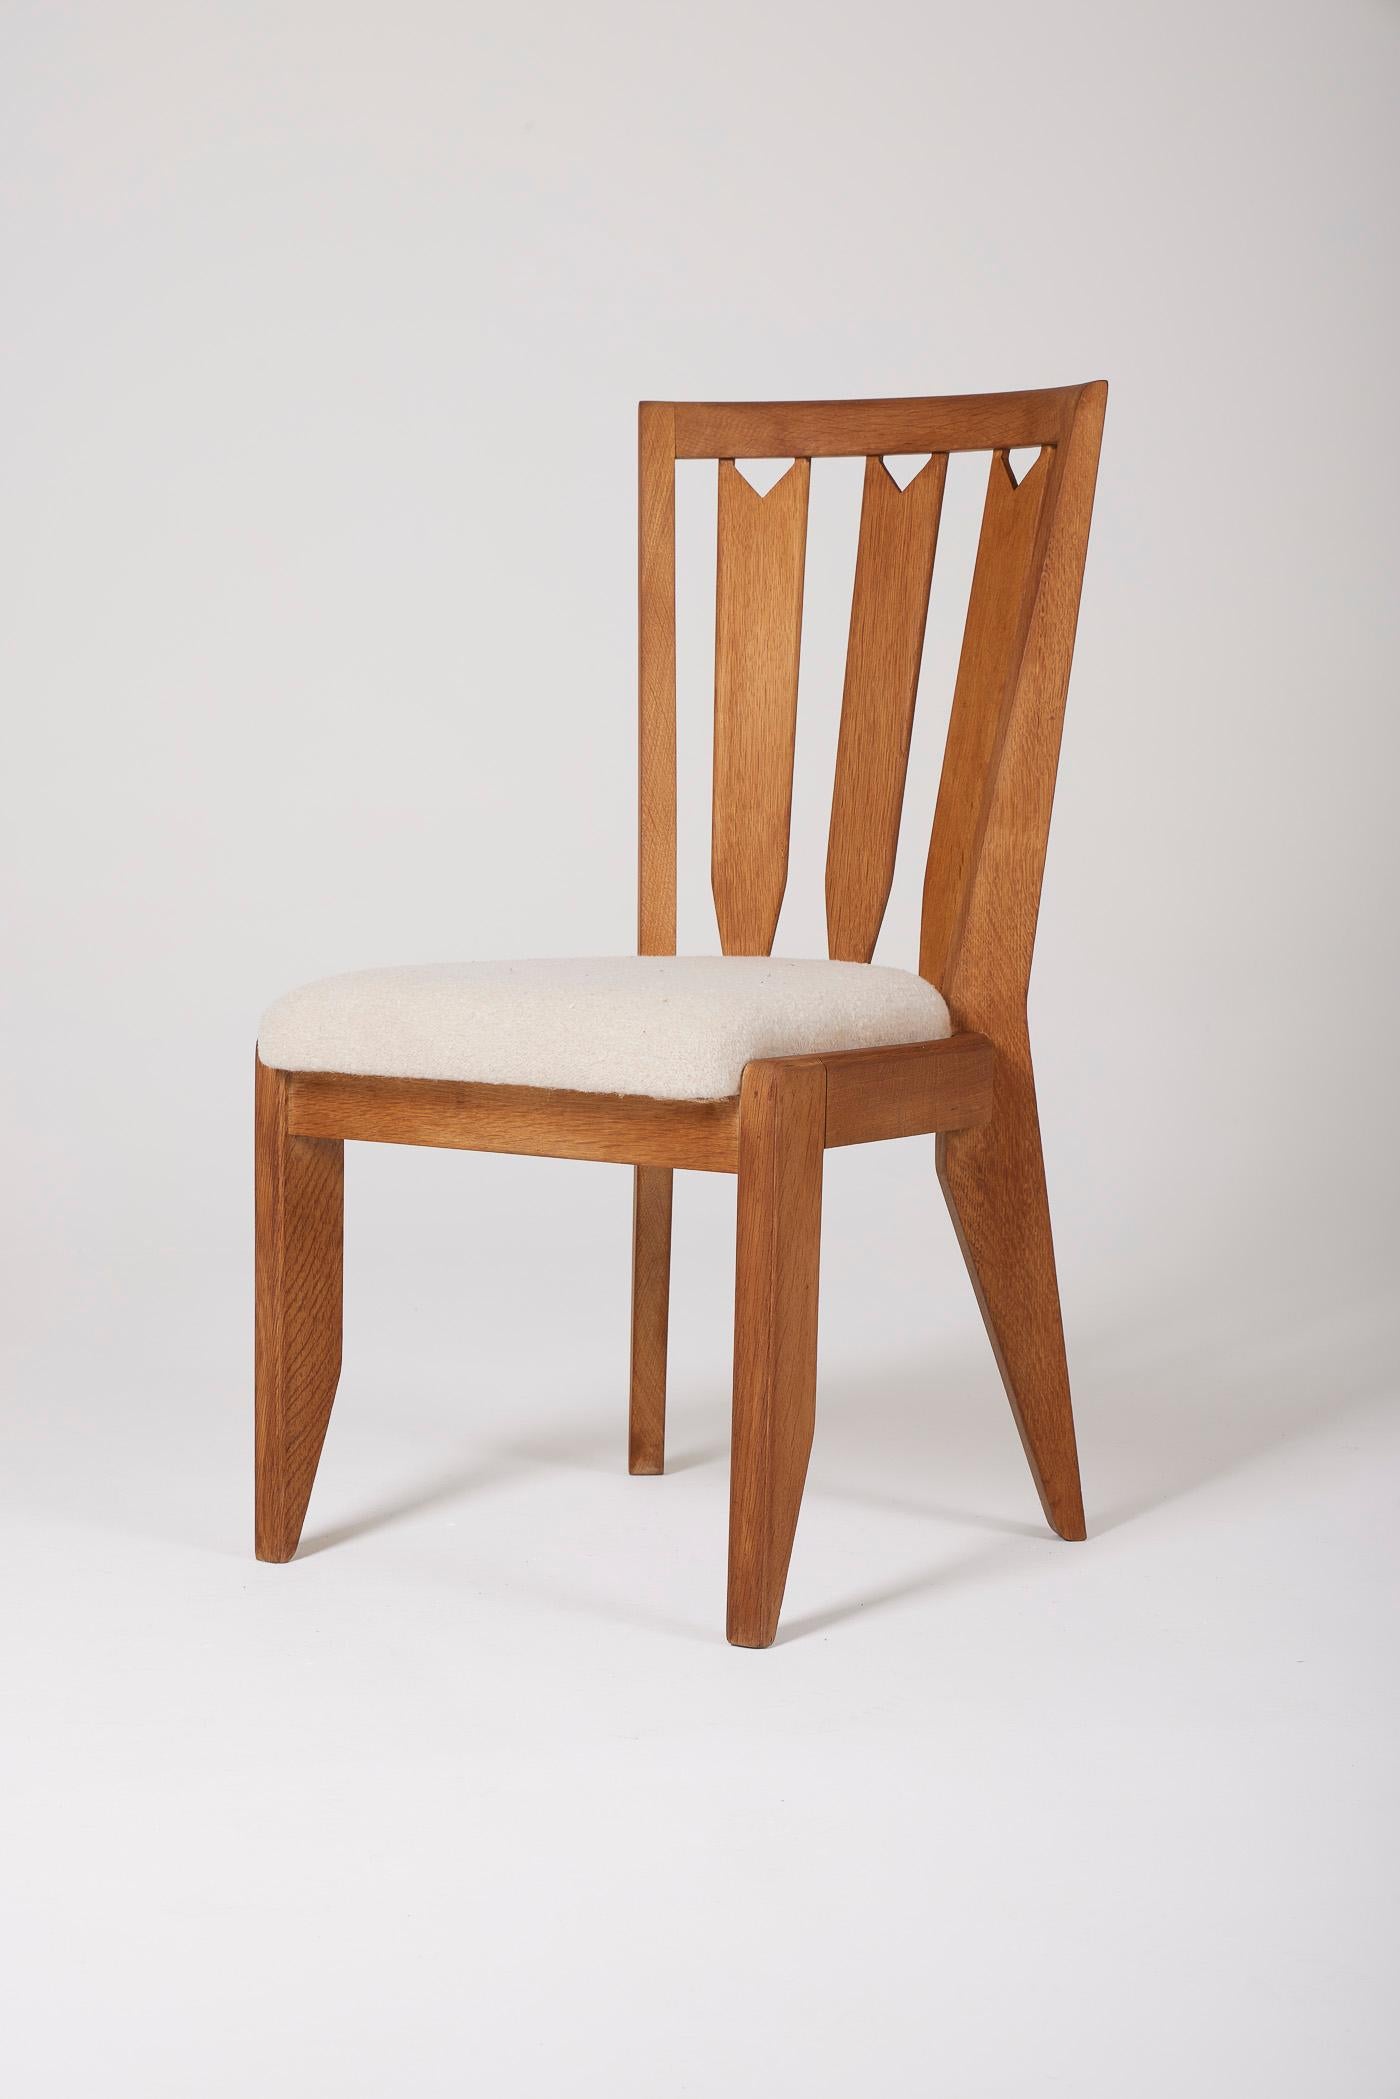 Stuhl der Designer Robert Guillerme und Jacques Chambron, 1960er Jahre. Die Struktur ist aus Eiche, der Sitz aus Stoff. Perfekter Zustand. 

LP2028 - LP2029